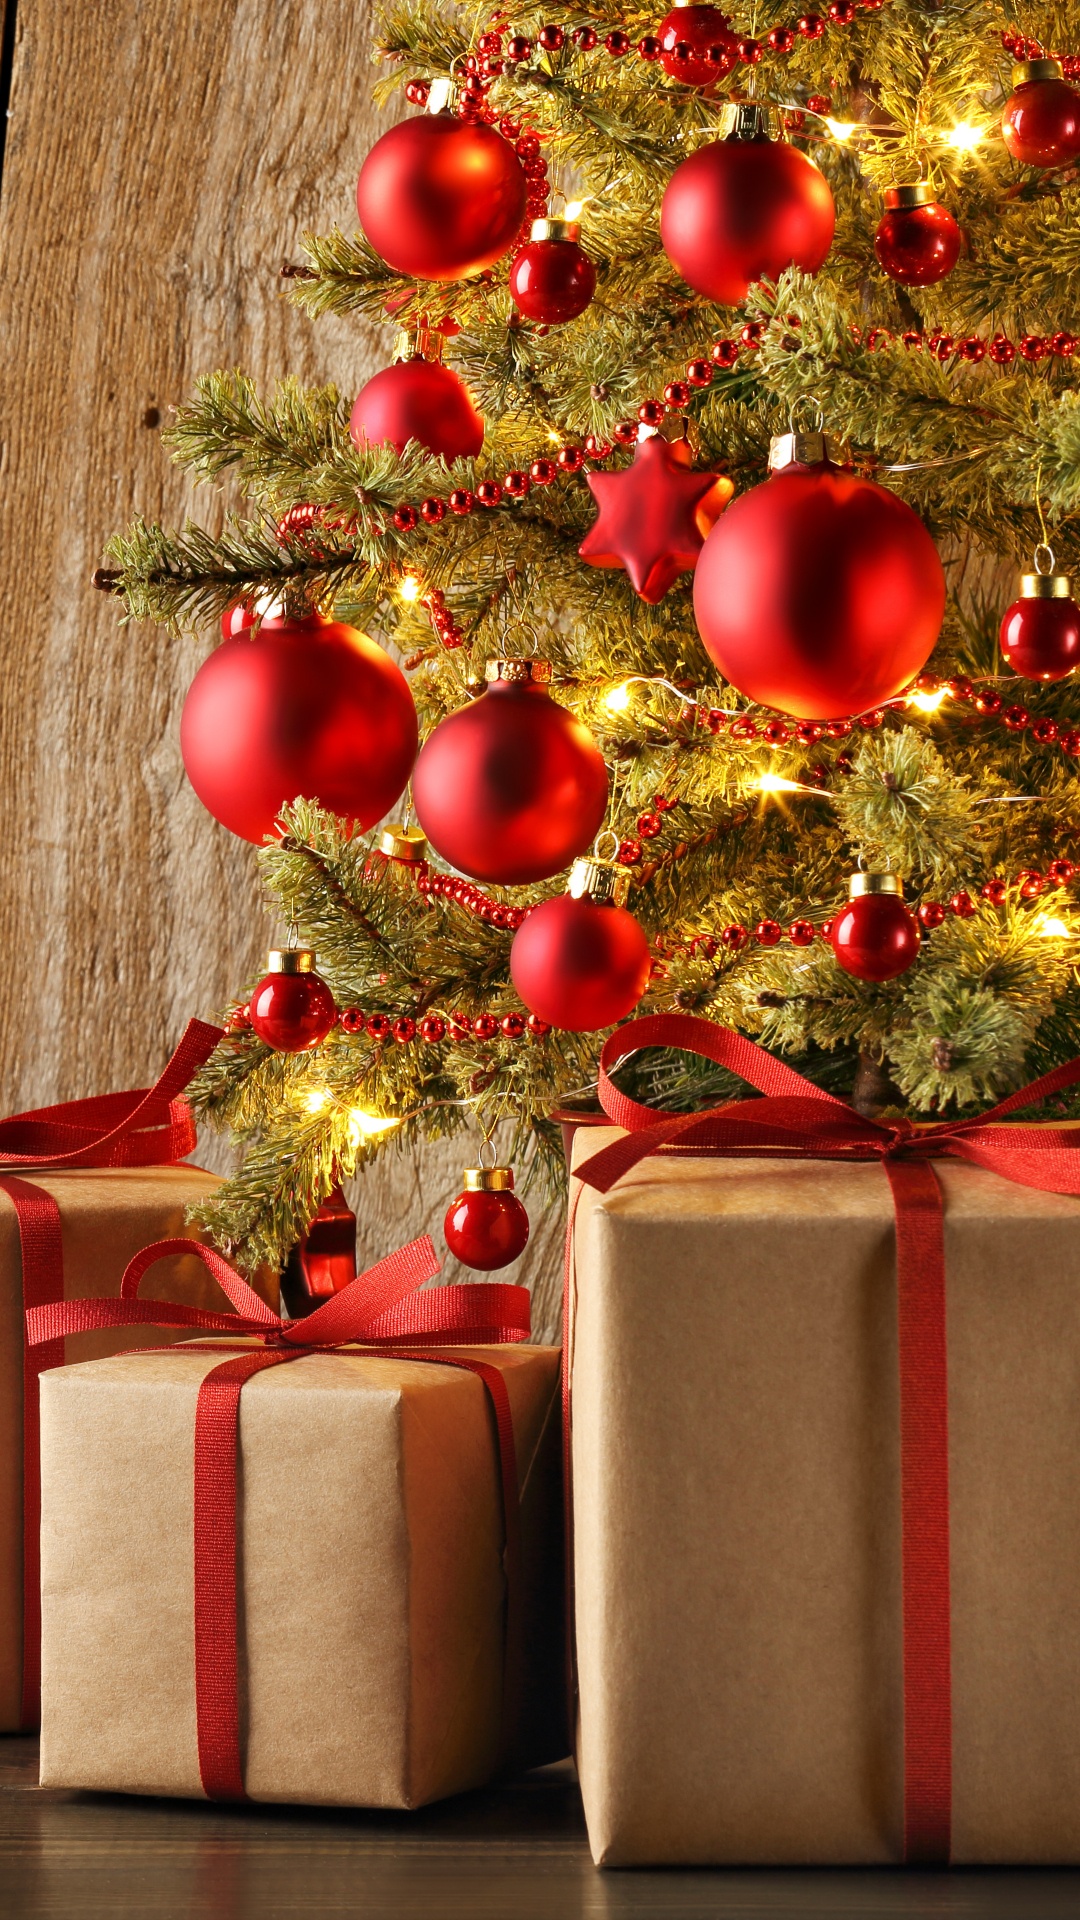 圣诞节那天, 礼物, 圣诞节的装饰品, 礼品包装, 新的一年 壁纸 1080x1920 允许